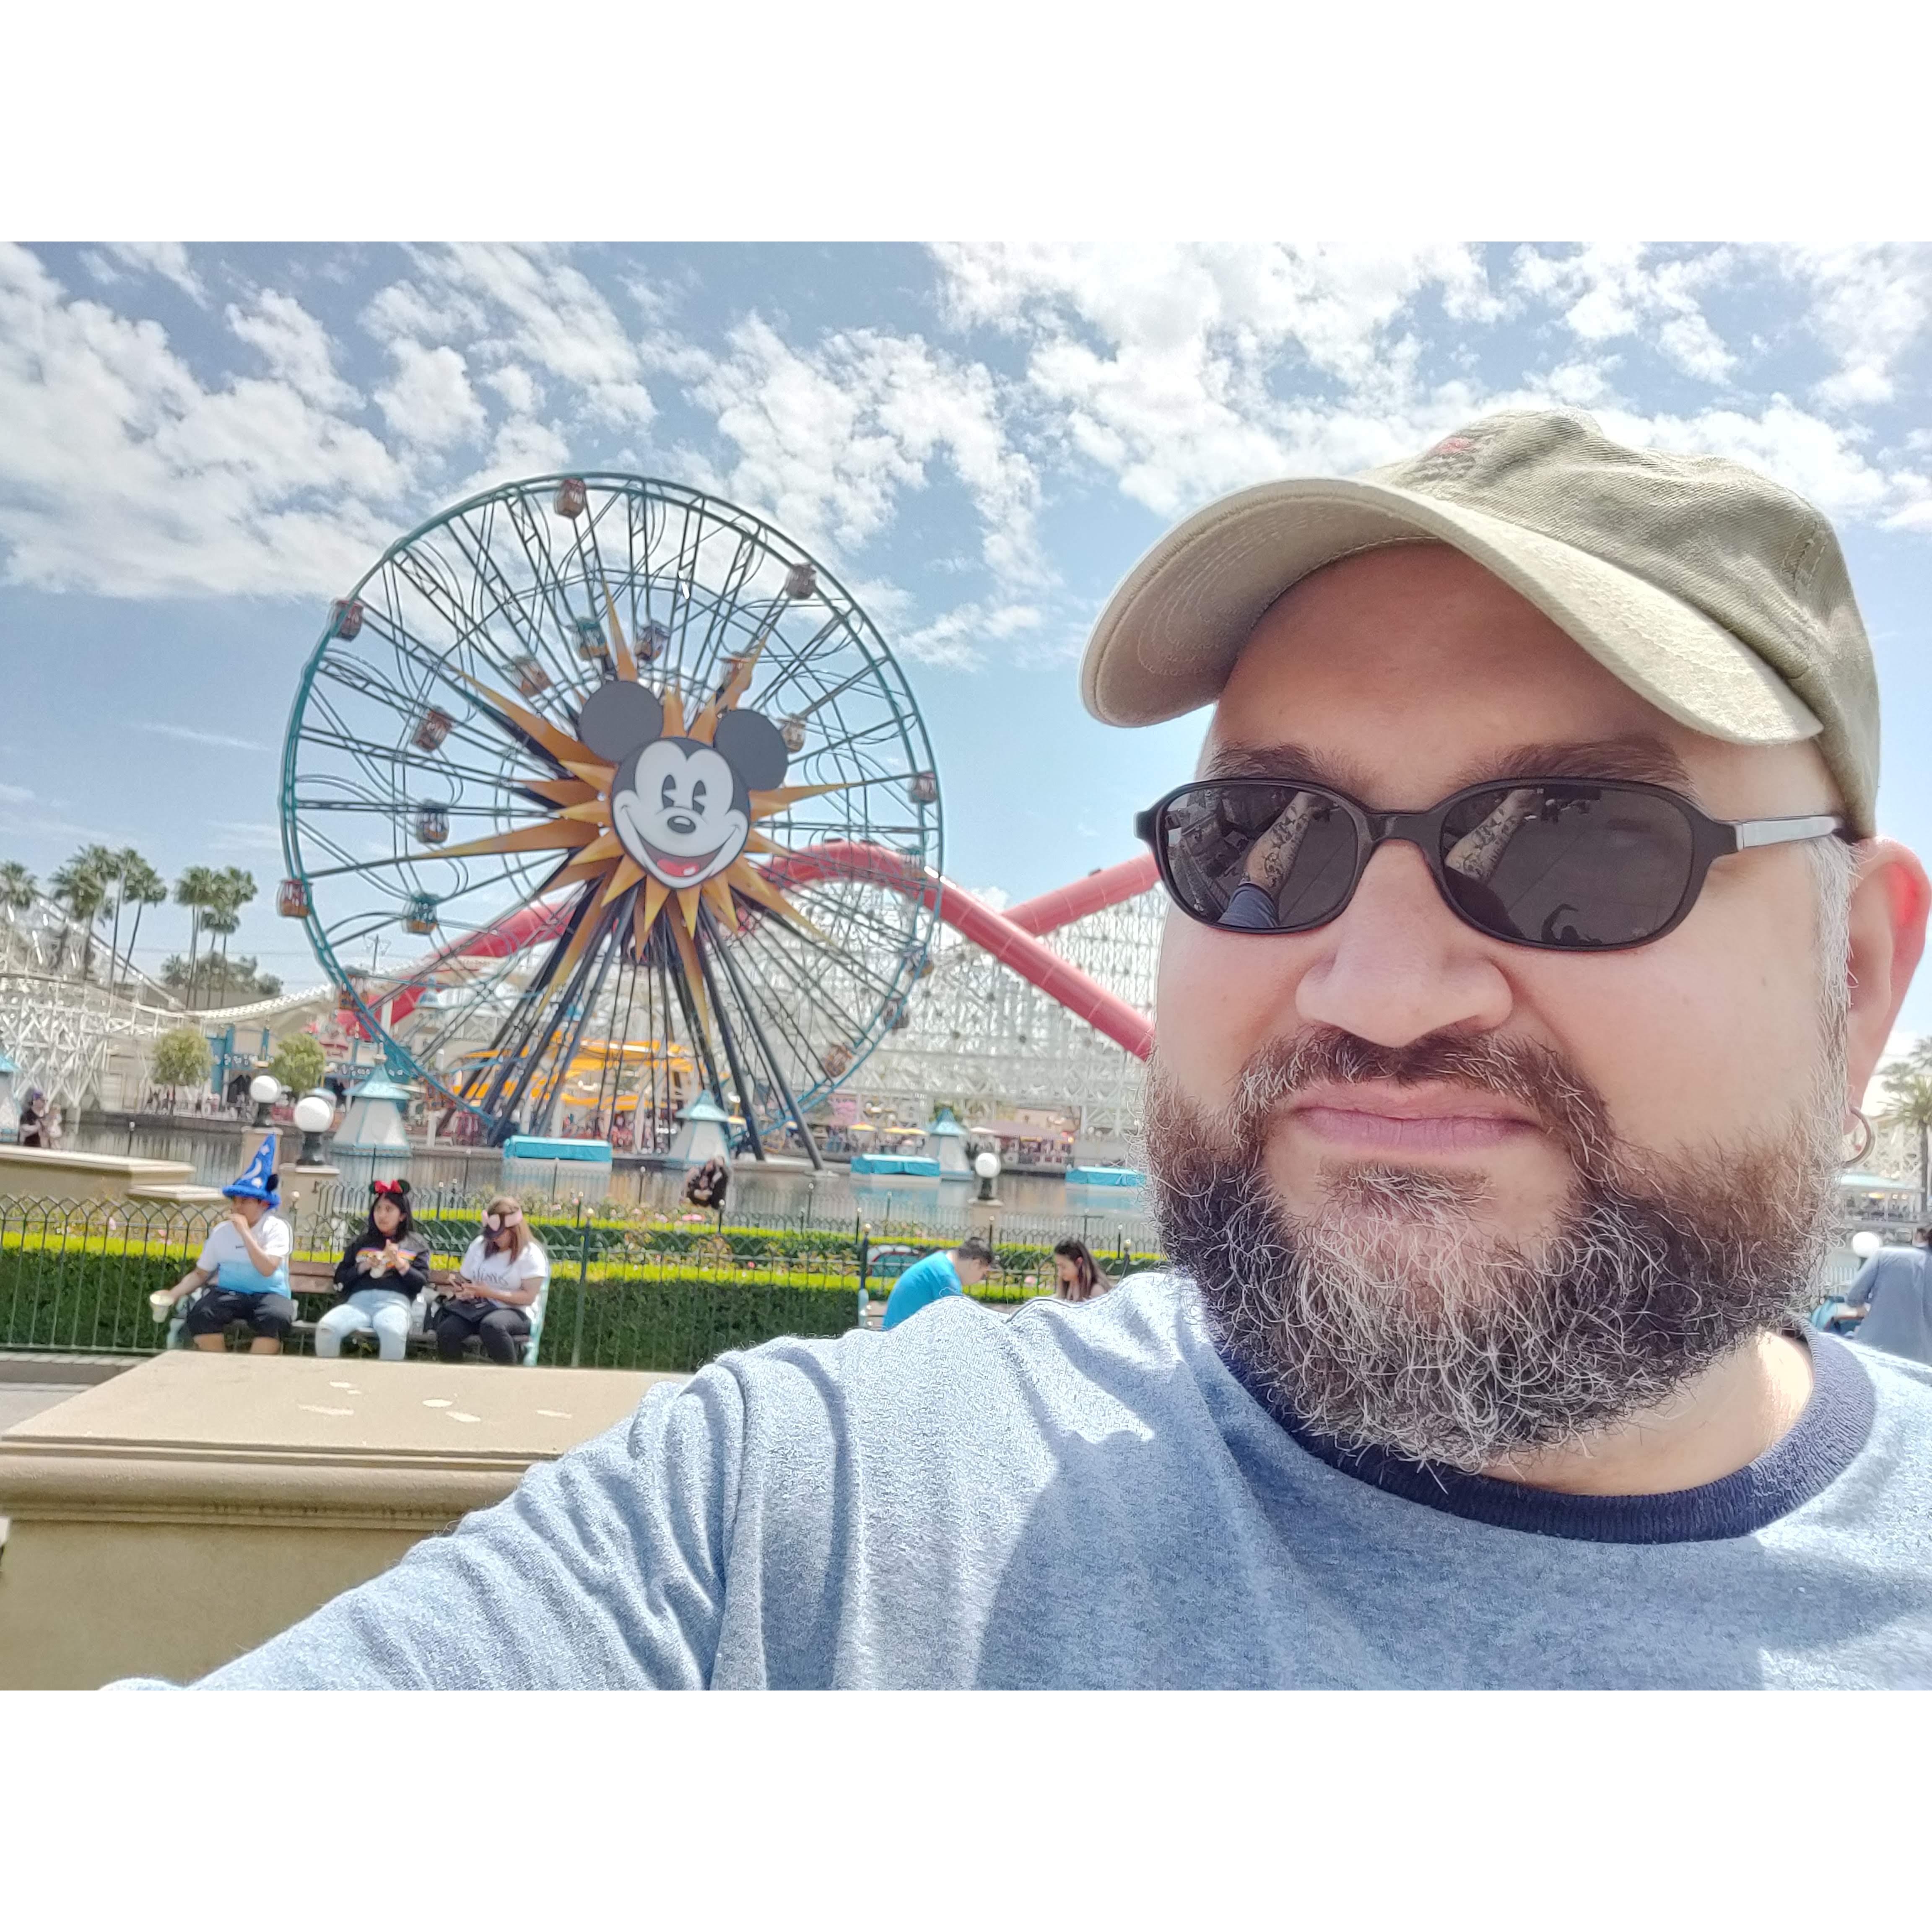 Disneyland April 2019